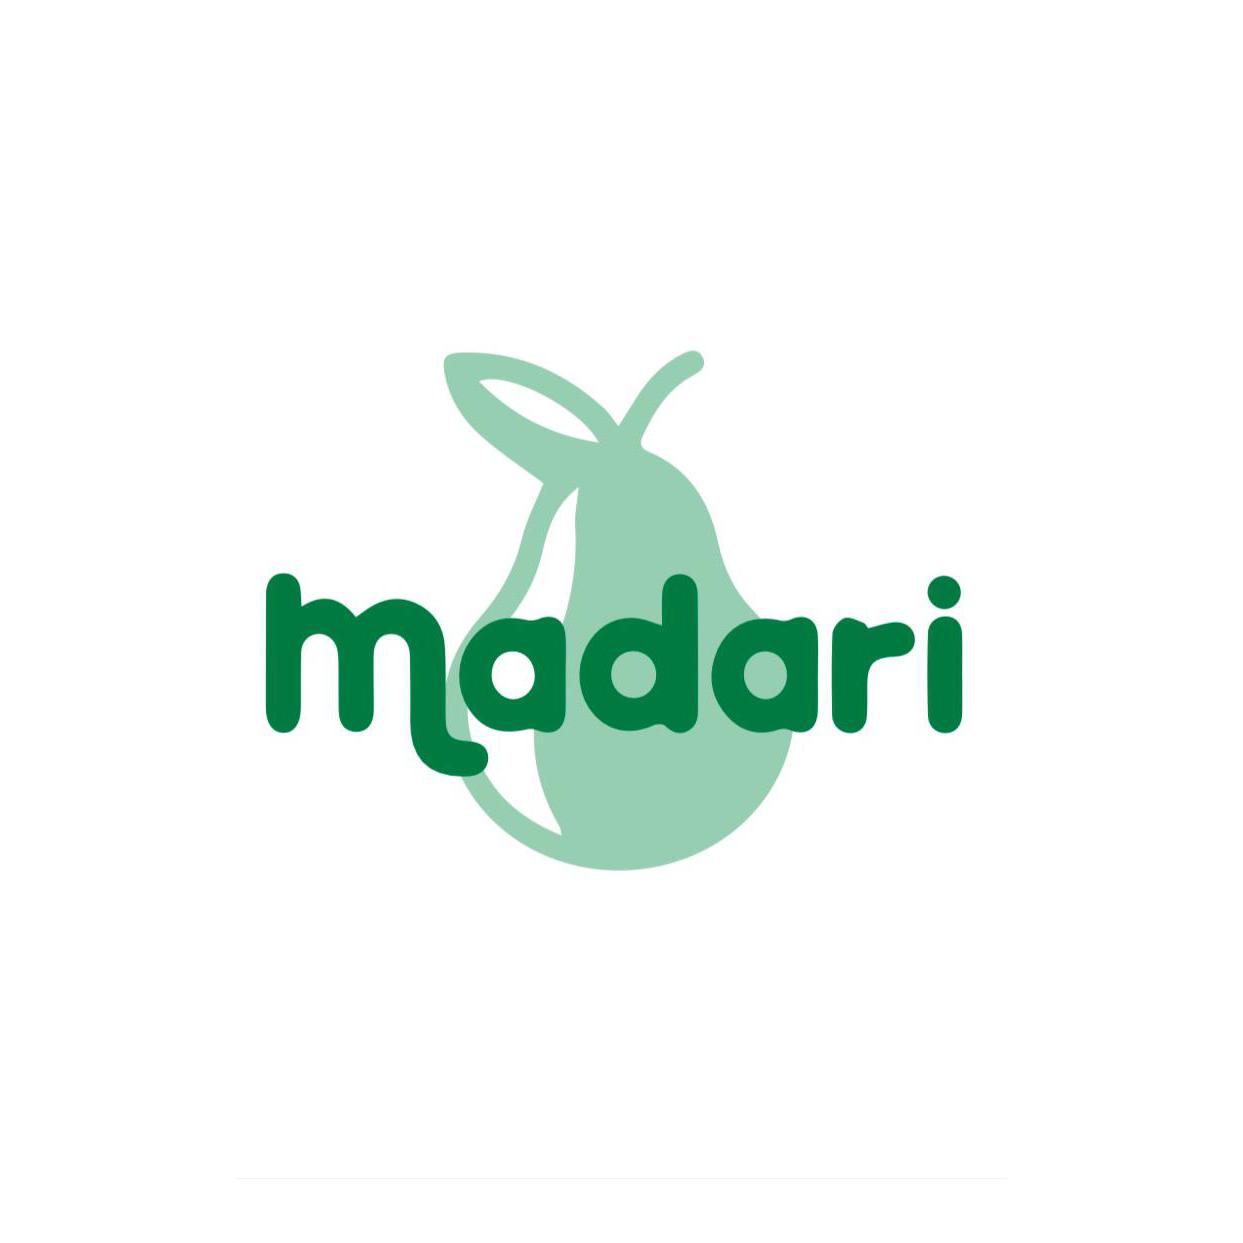 Madari Logo